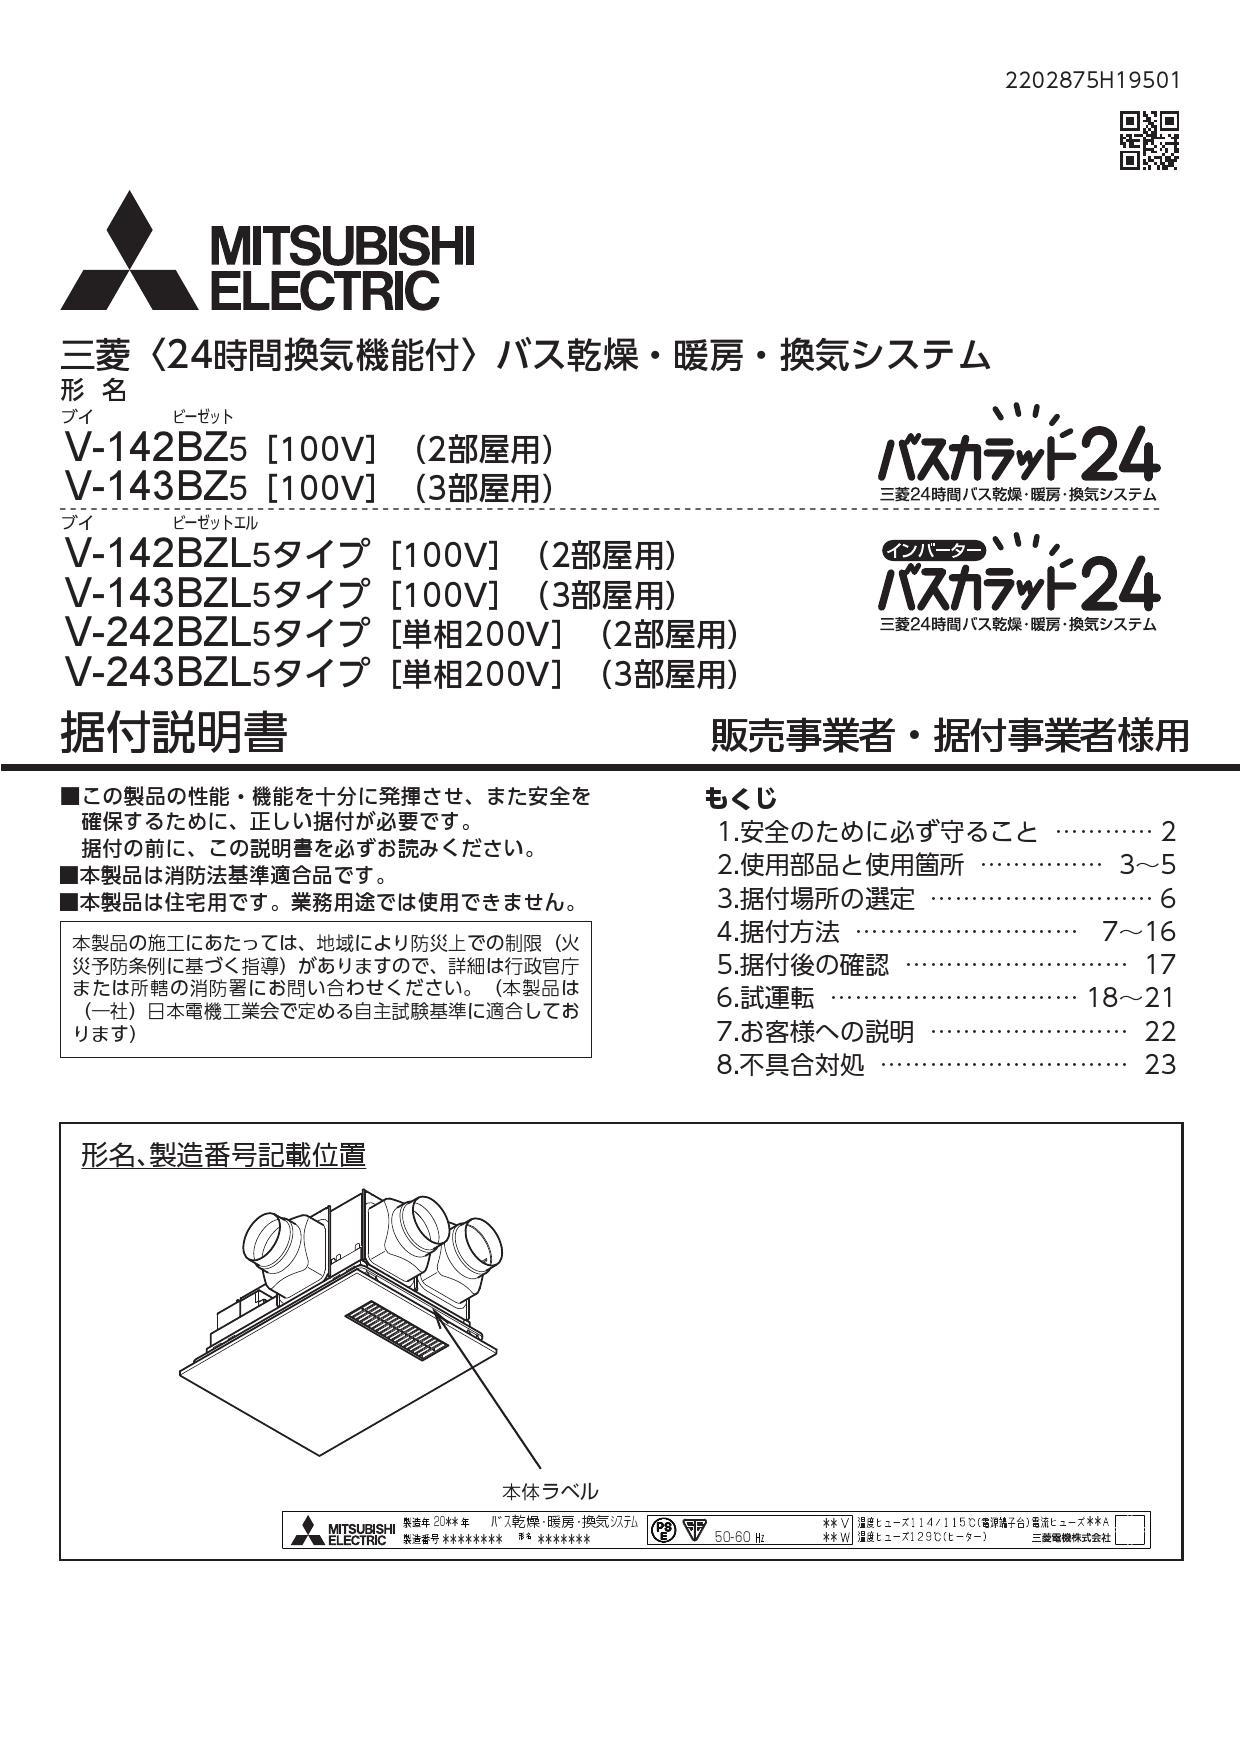 激安特価 三菱電機 MITSUBISHI ELECTRIC バス乾燥 暖房 換気システム 2部屋換気用 2部屋用 1部屋暖房 2部屋換気タイプ V− 142BZL5